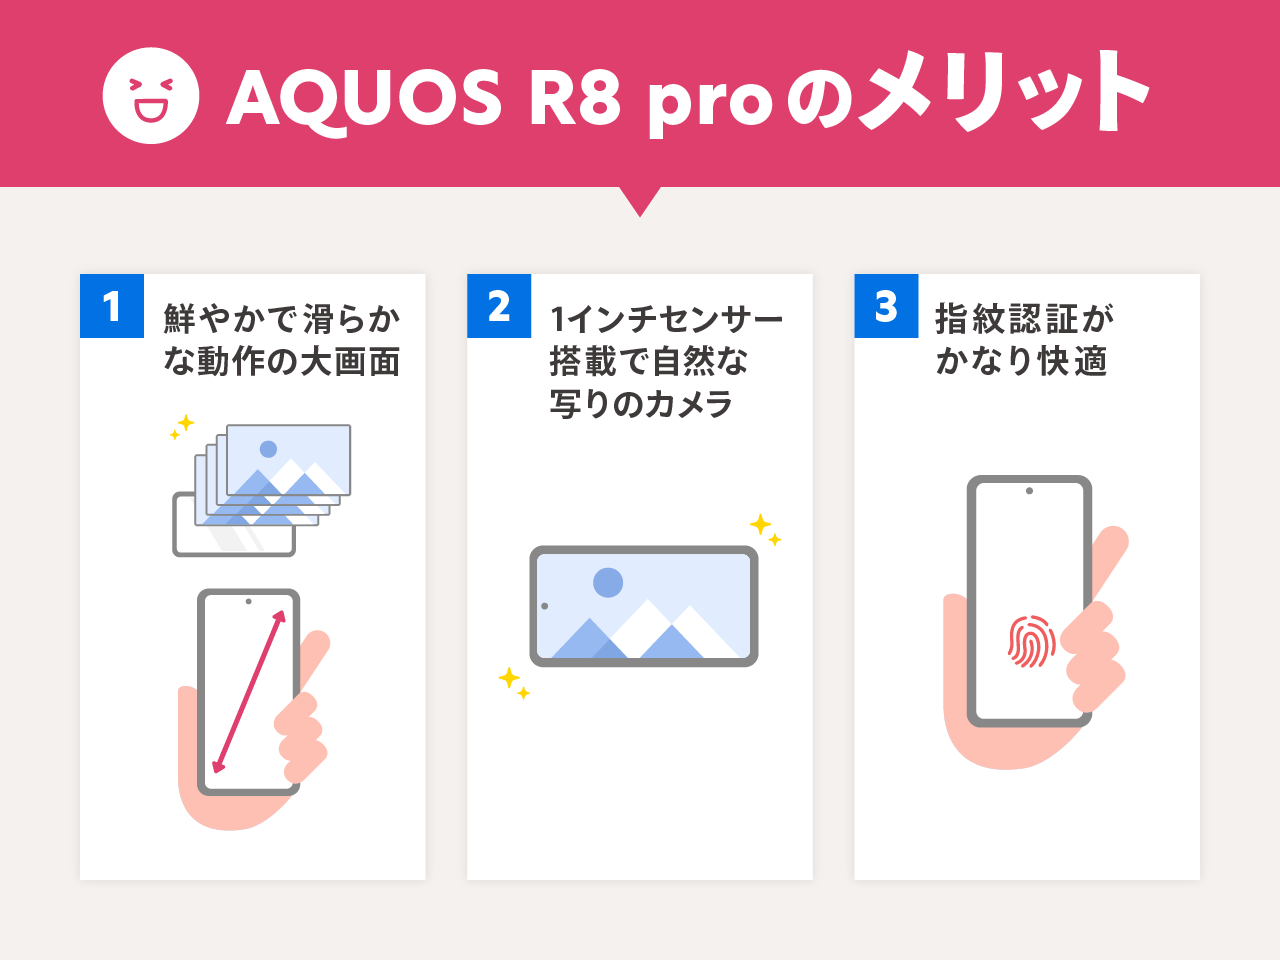 AQUOS R8 proのメリット